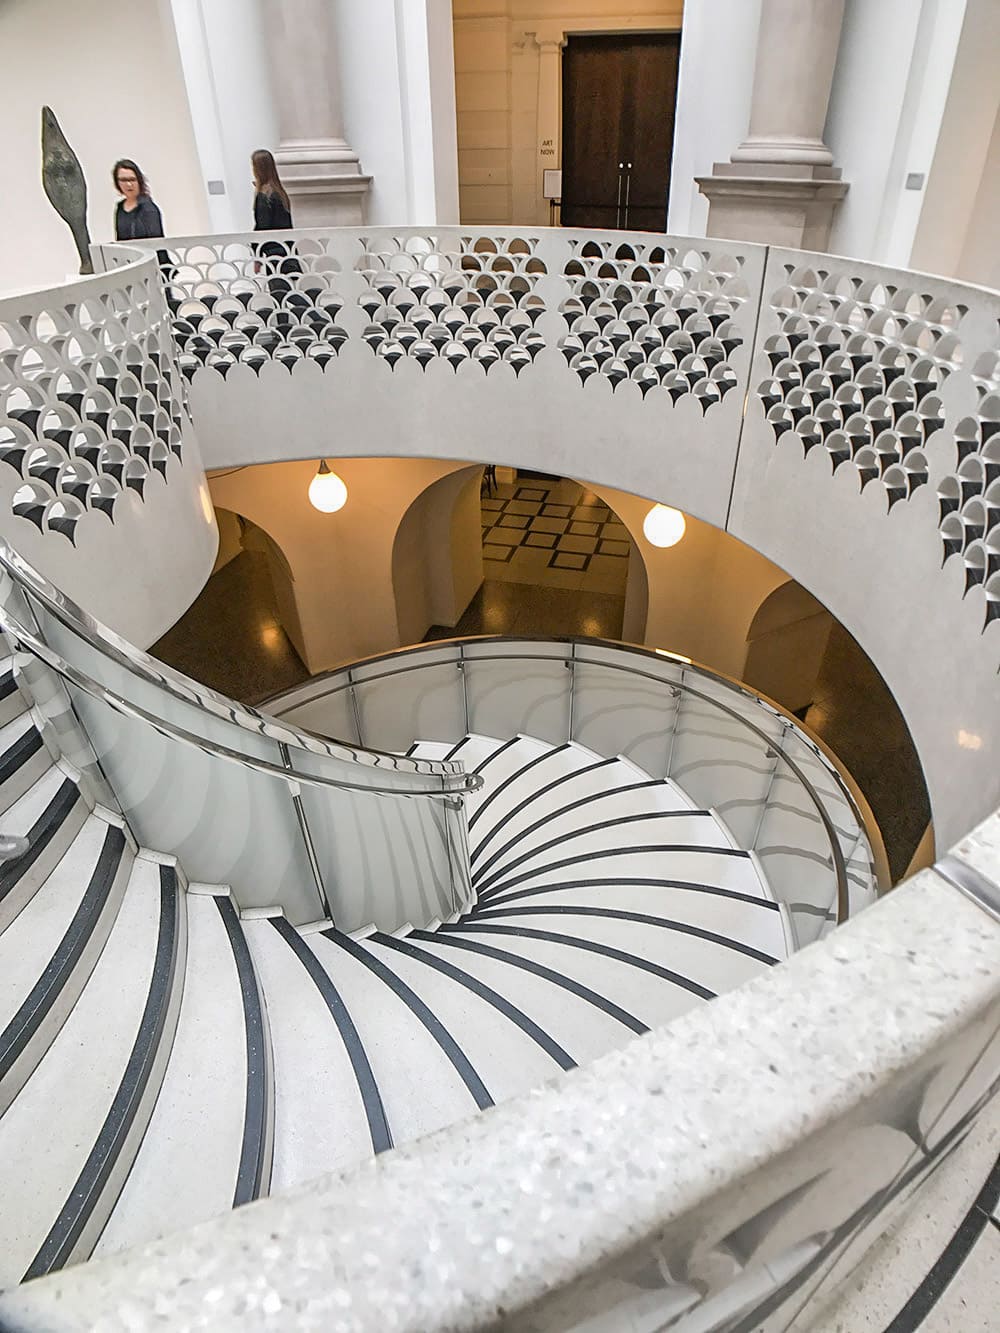 泰特不列顛 Tate Britain 螺旋樓梯